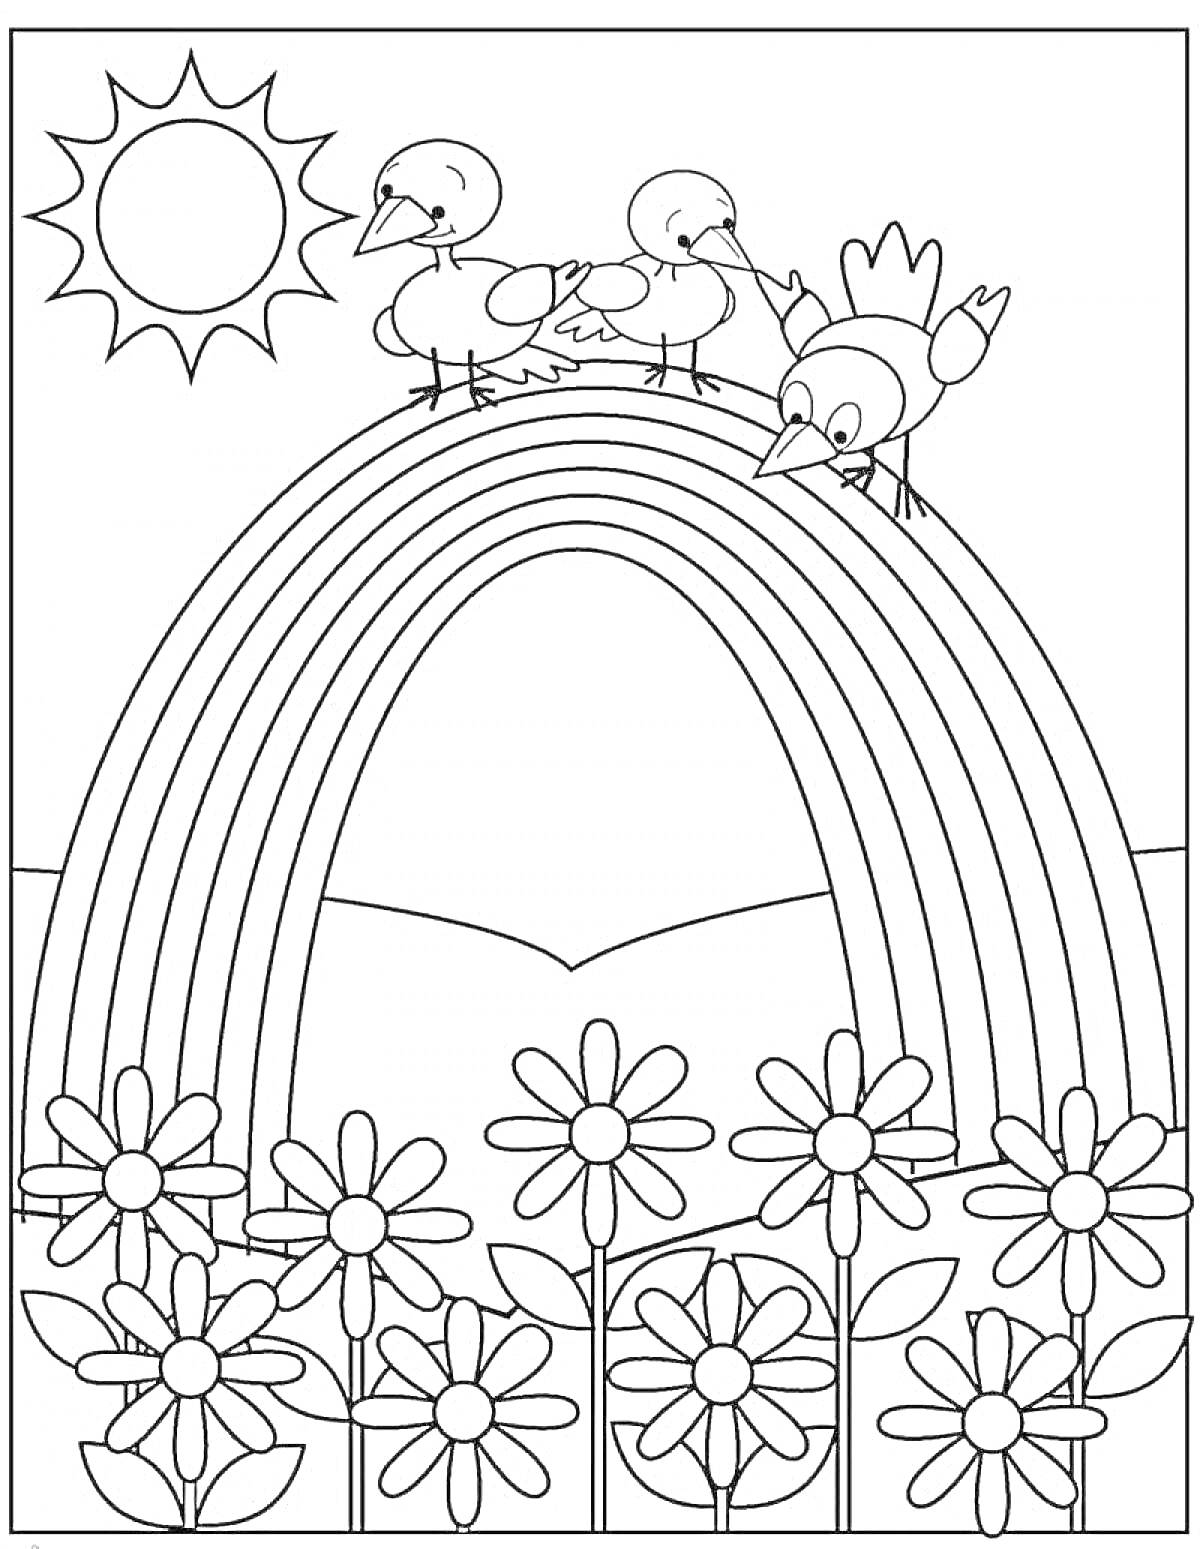 Раскраска Радуга с тремя птицами и цветами под солнышком